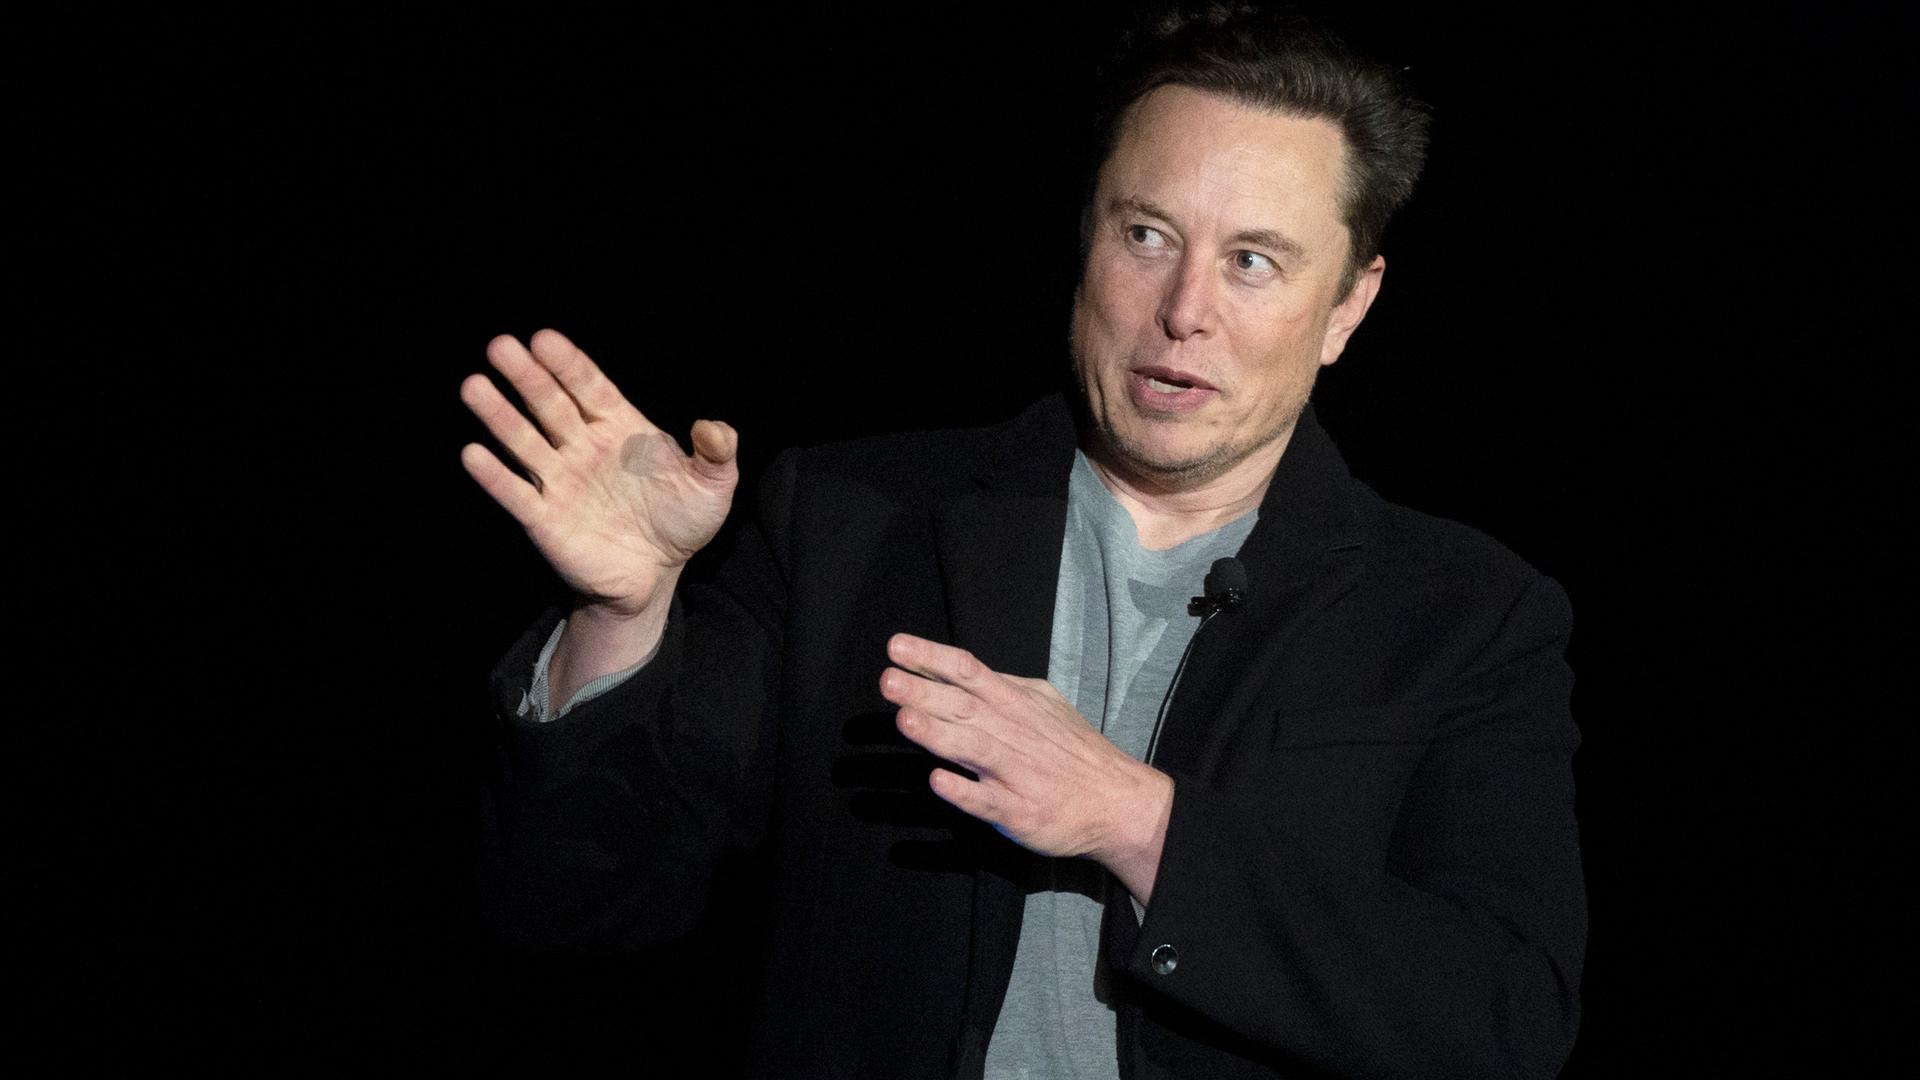 Der Tech-Unternehmer Elon Musk macht während eines Vortrags mit beiden Händen eine Geste, als wollte er etwas beiseite schieben.